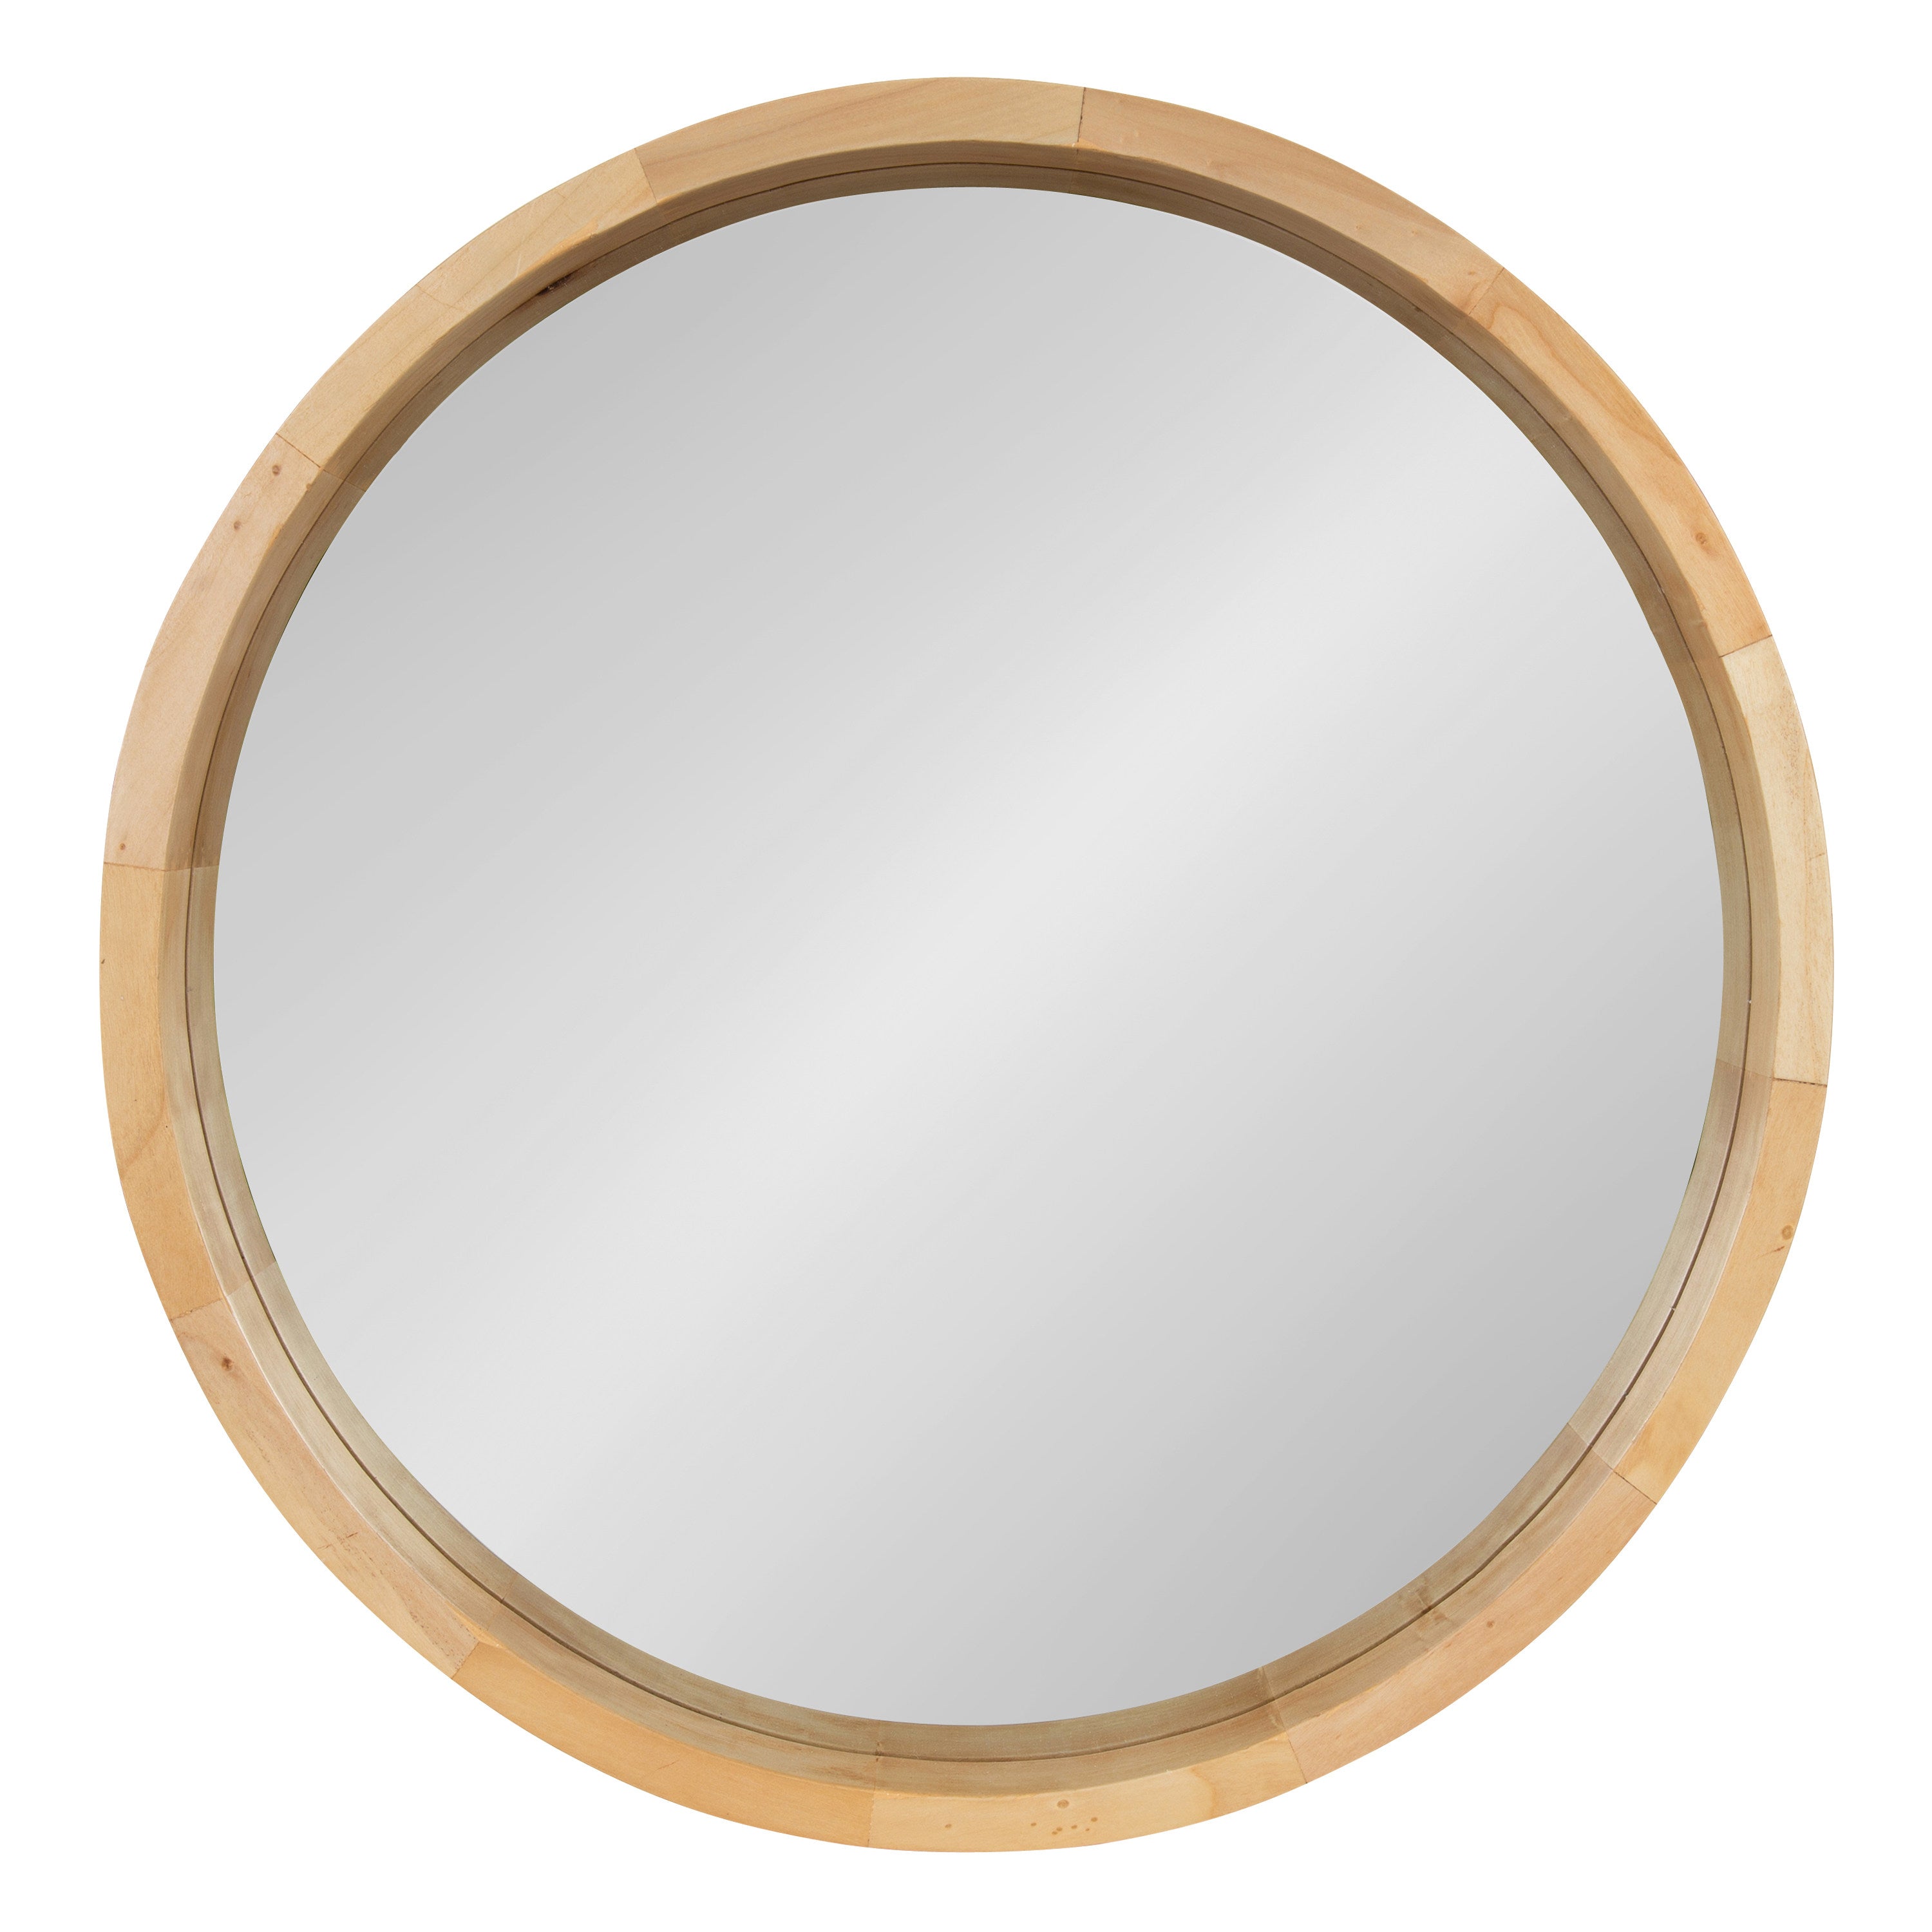 Hutton Round Wood Wall Mirror